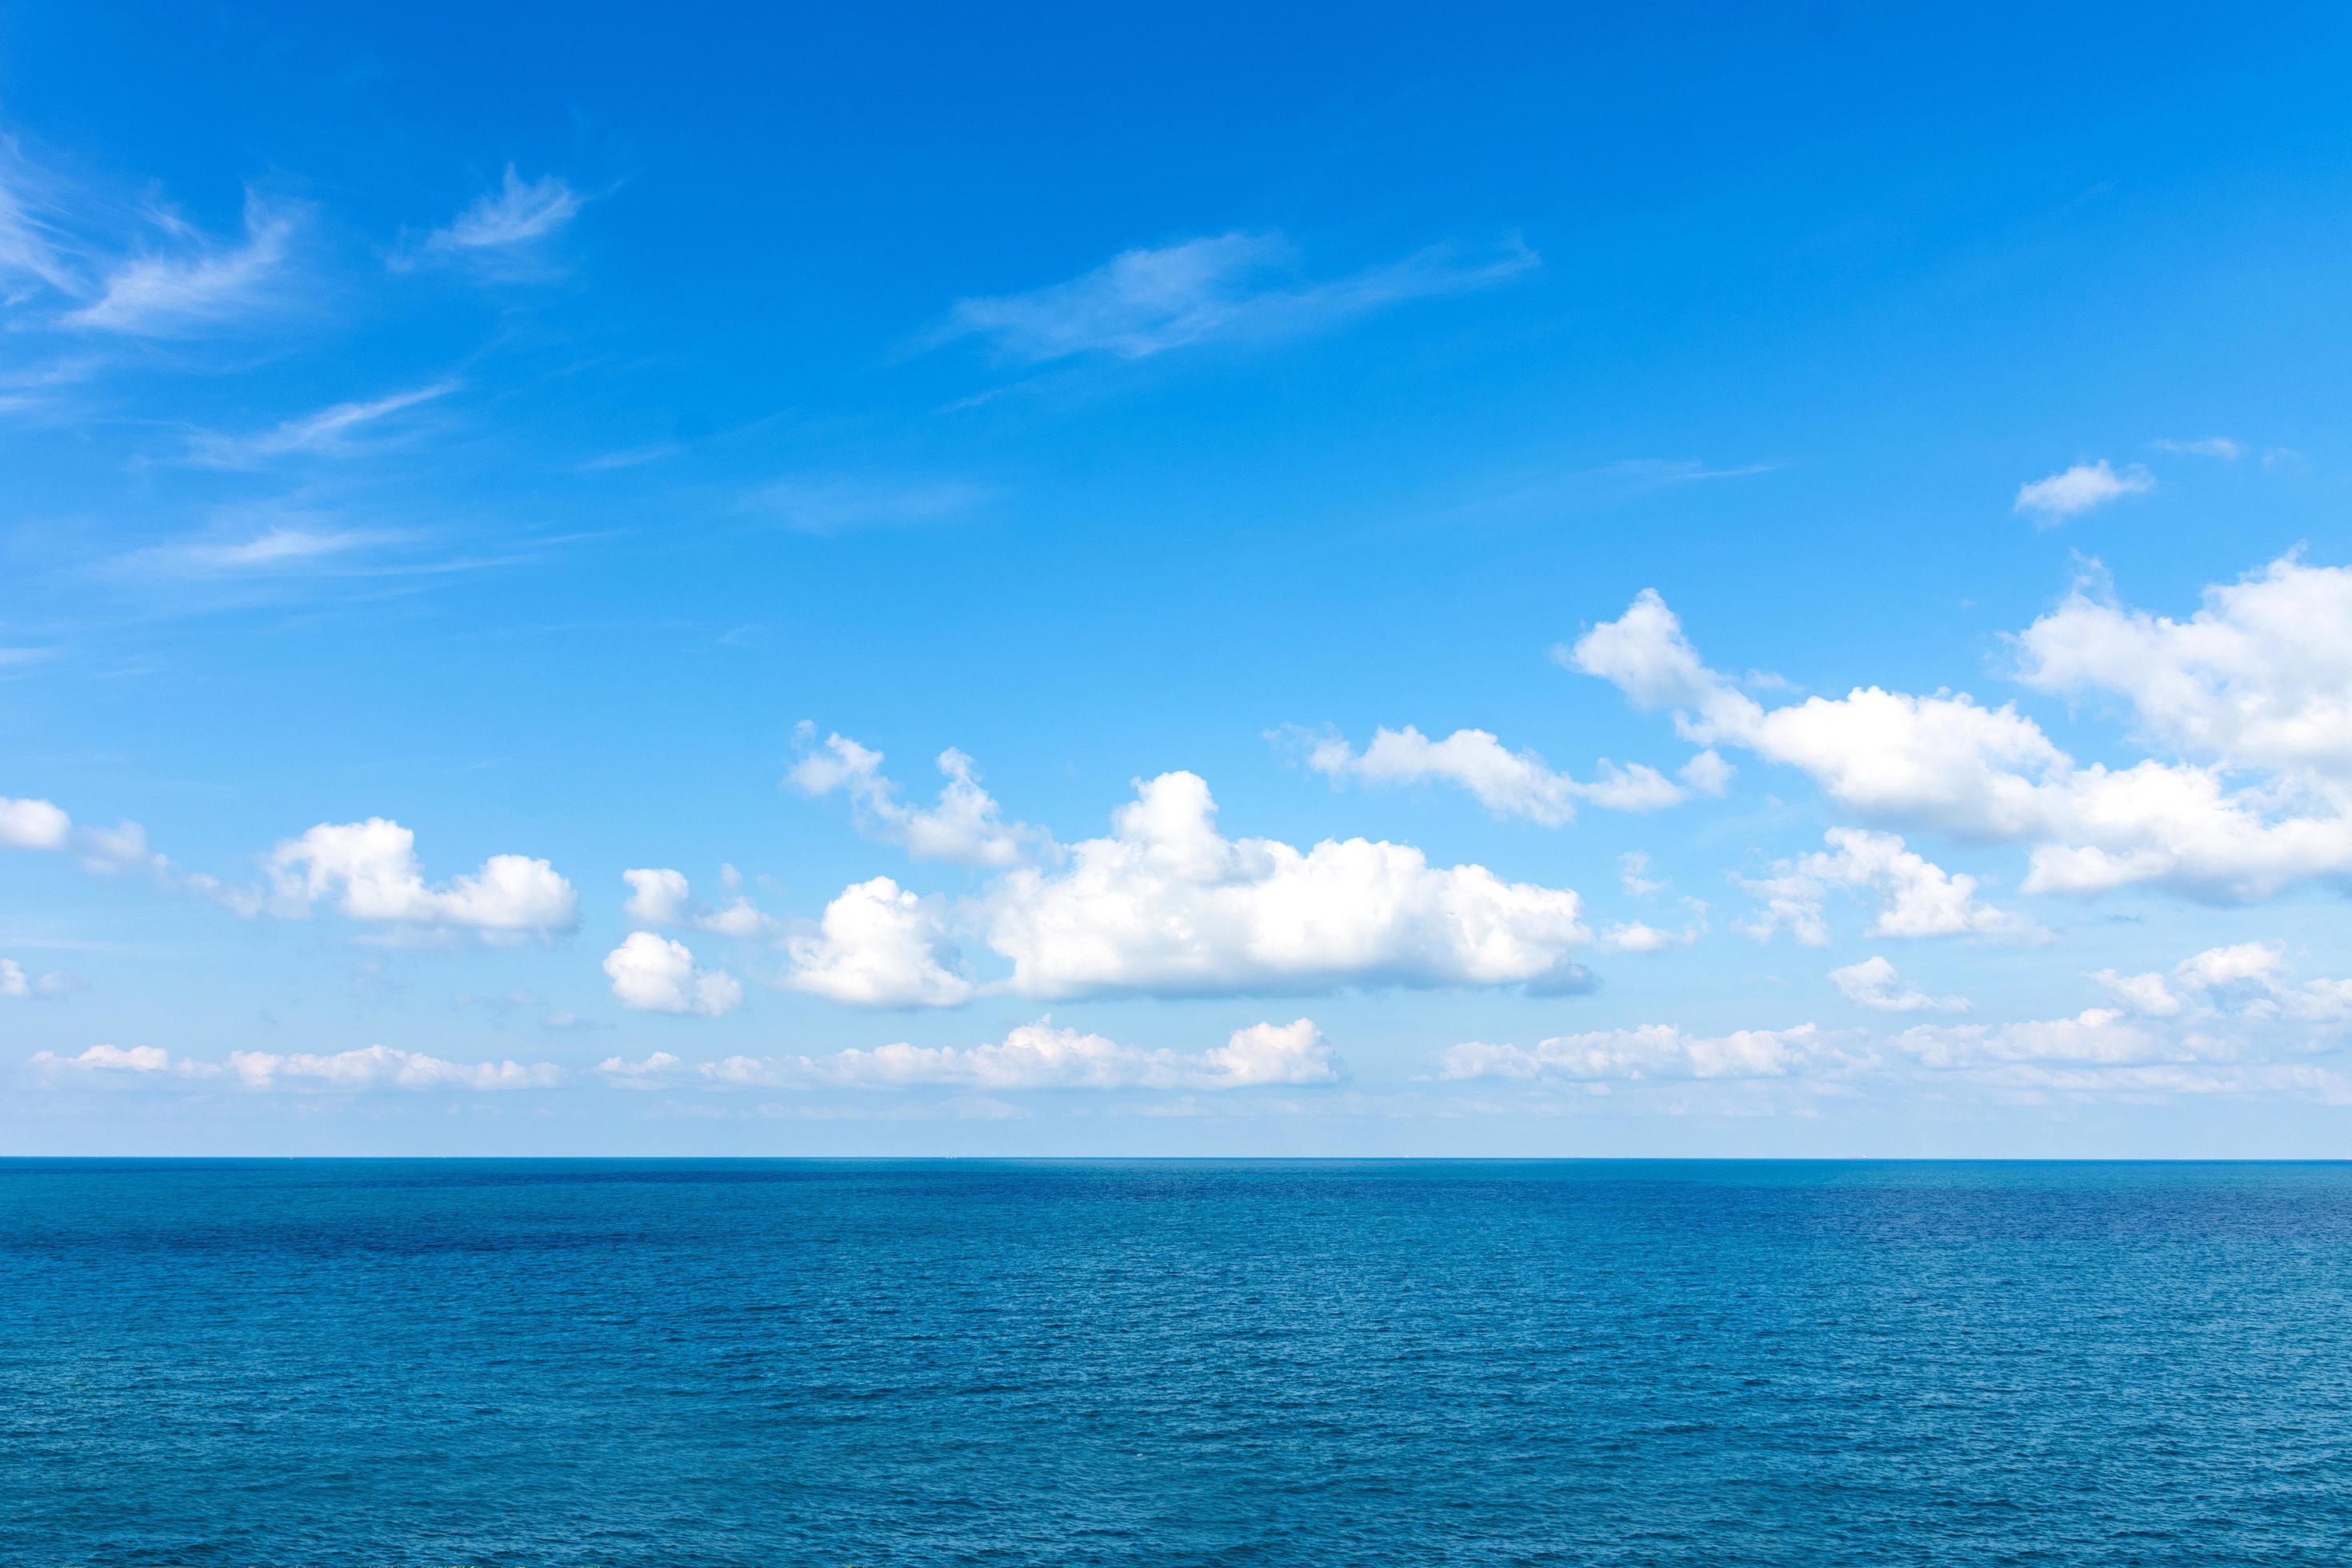 Với hình nền đại dương và bầu trời xanh, bạn sẽ được đắm mình trong thế giới tuyệt vời của thiên nhiên. Đây là một hình ảnh không thể bỏ qua nếu bạn yêu thích sự đẹp và muốn tìm thấy một chút trợi lựa trong cuộc sống bận rộn của bạn. Hãy cho mình một chút thời gian để thưởng thức và cảm nhận sự tuyệt vời của nó.